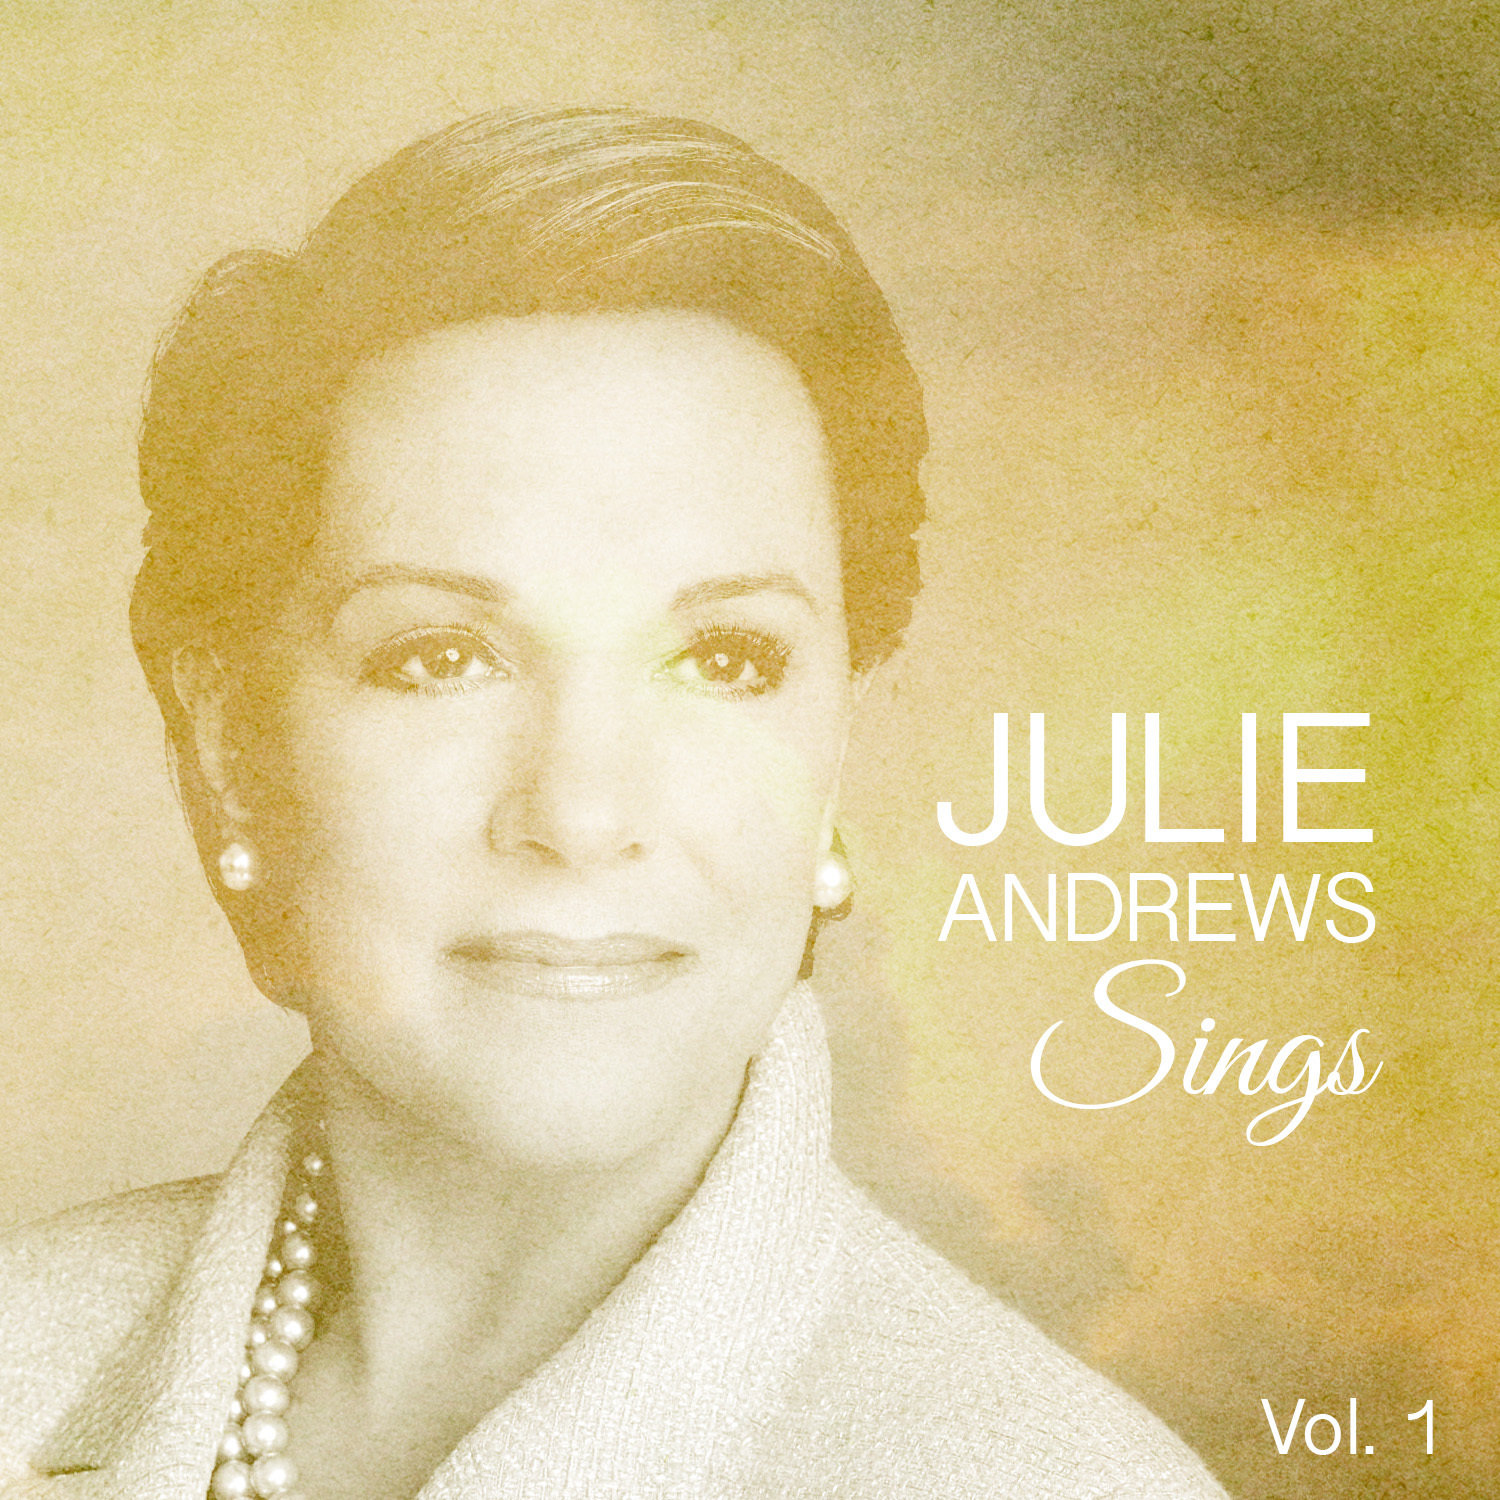 Julie Andrews. Julie Andrews my favorite things. He sings well